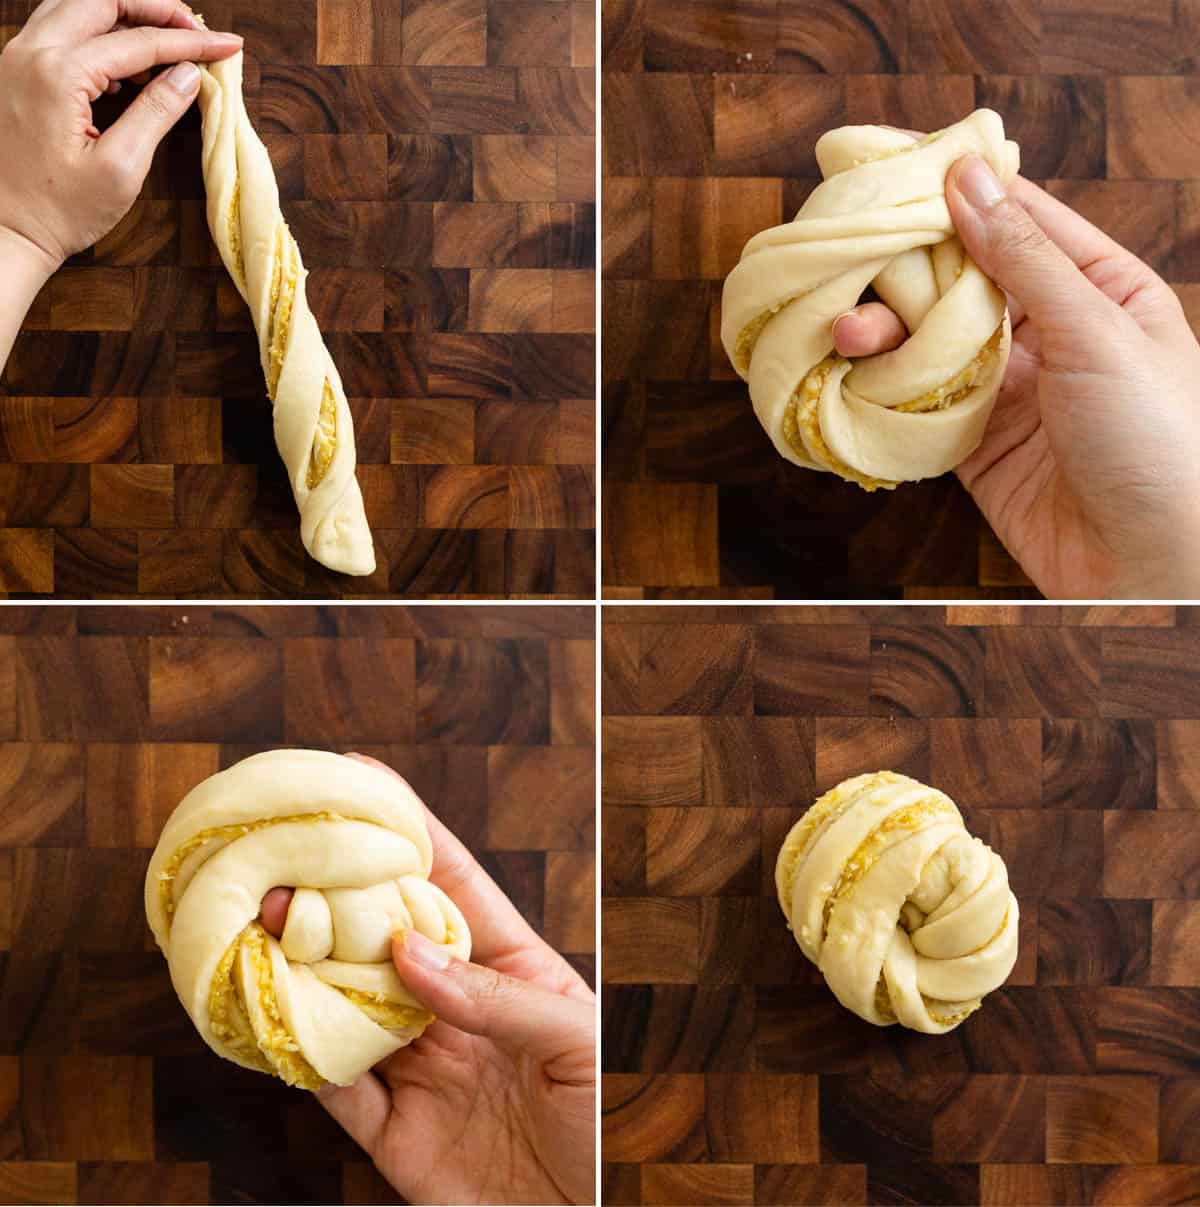 Finishing tying dough into knot